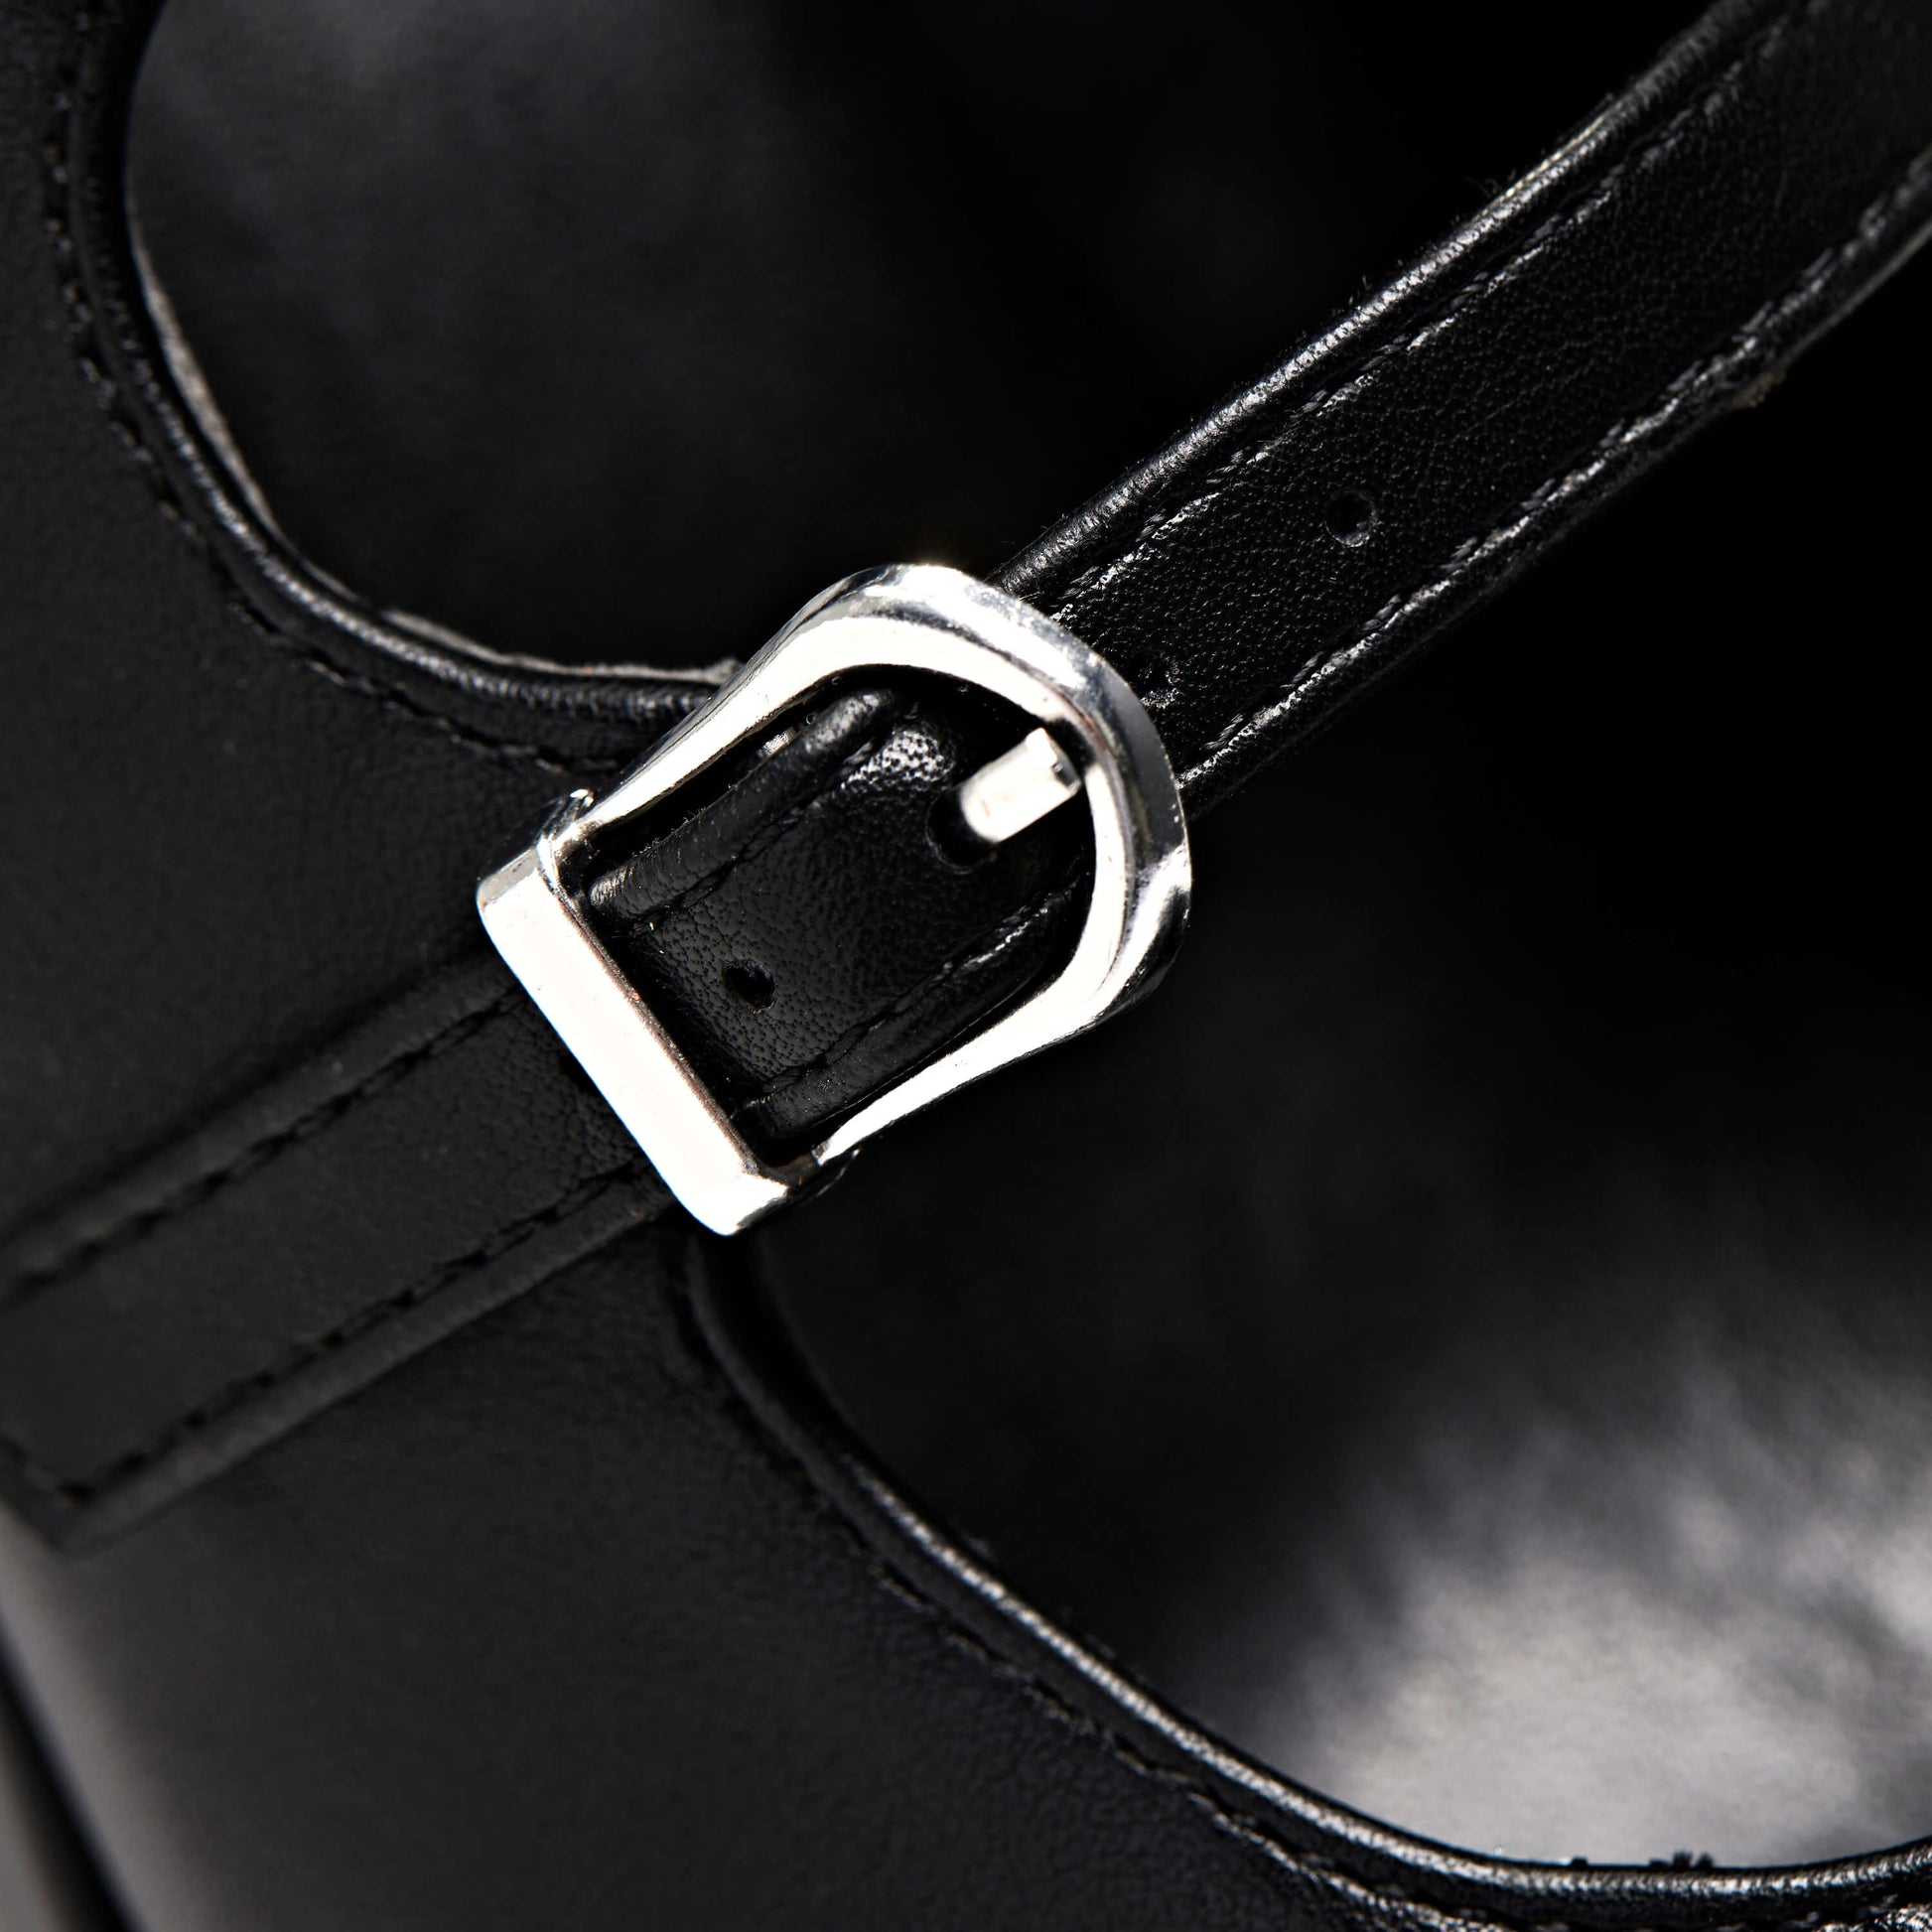 Zeba Black Platform Heels - Shoes - KOI Footwear - Black - Buckle Detail